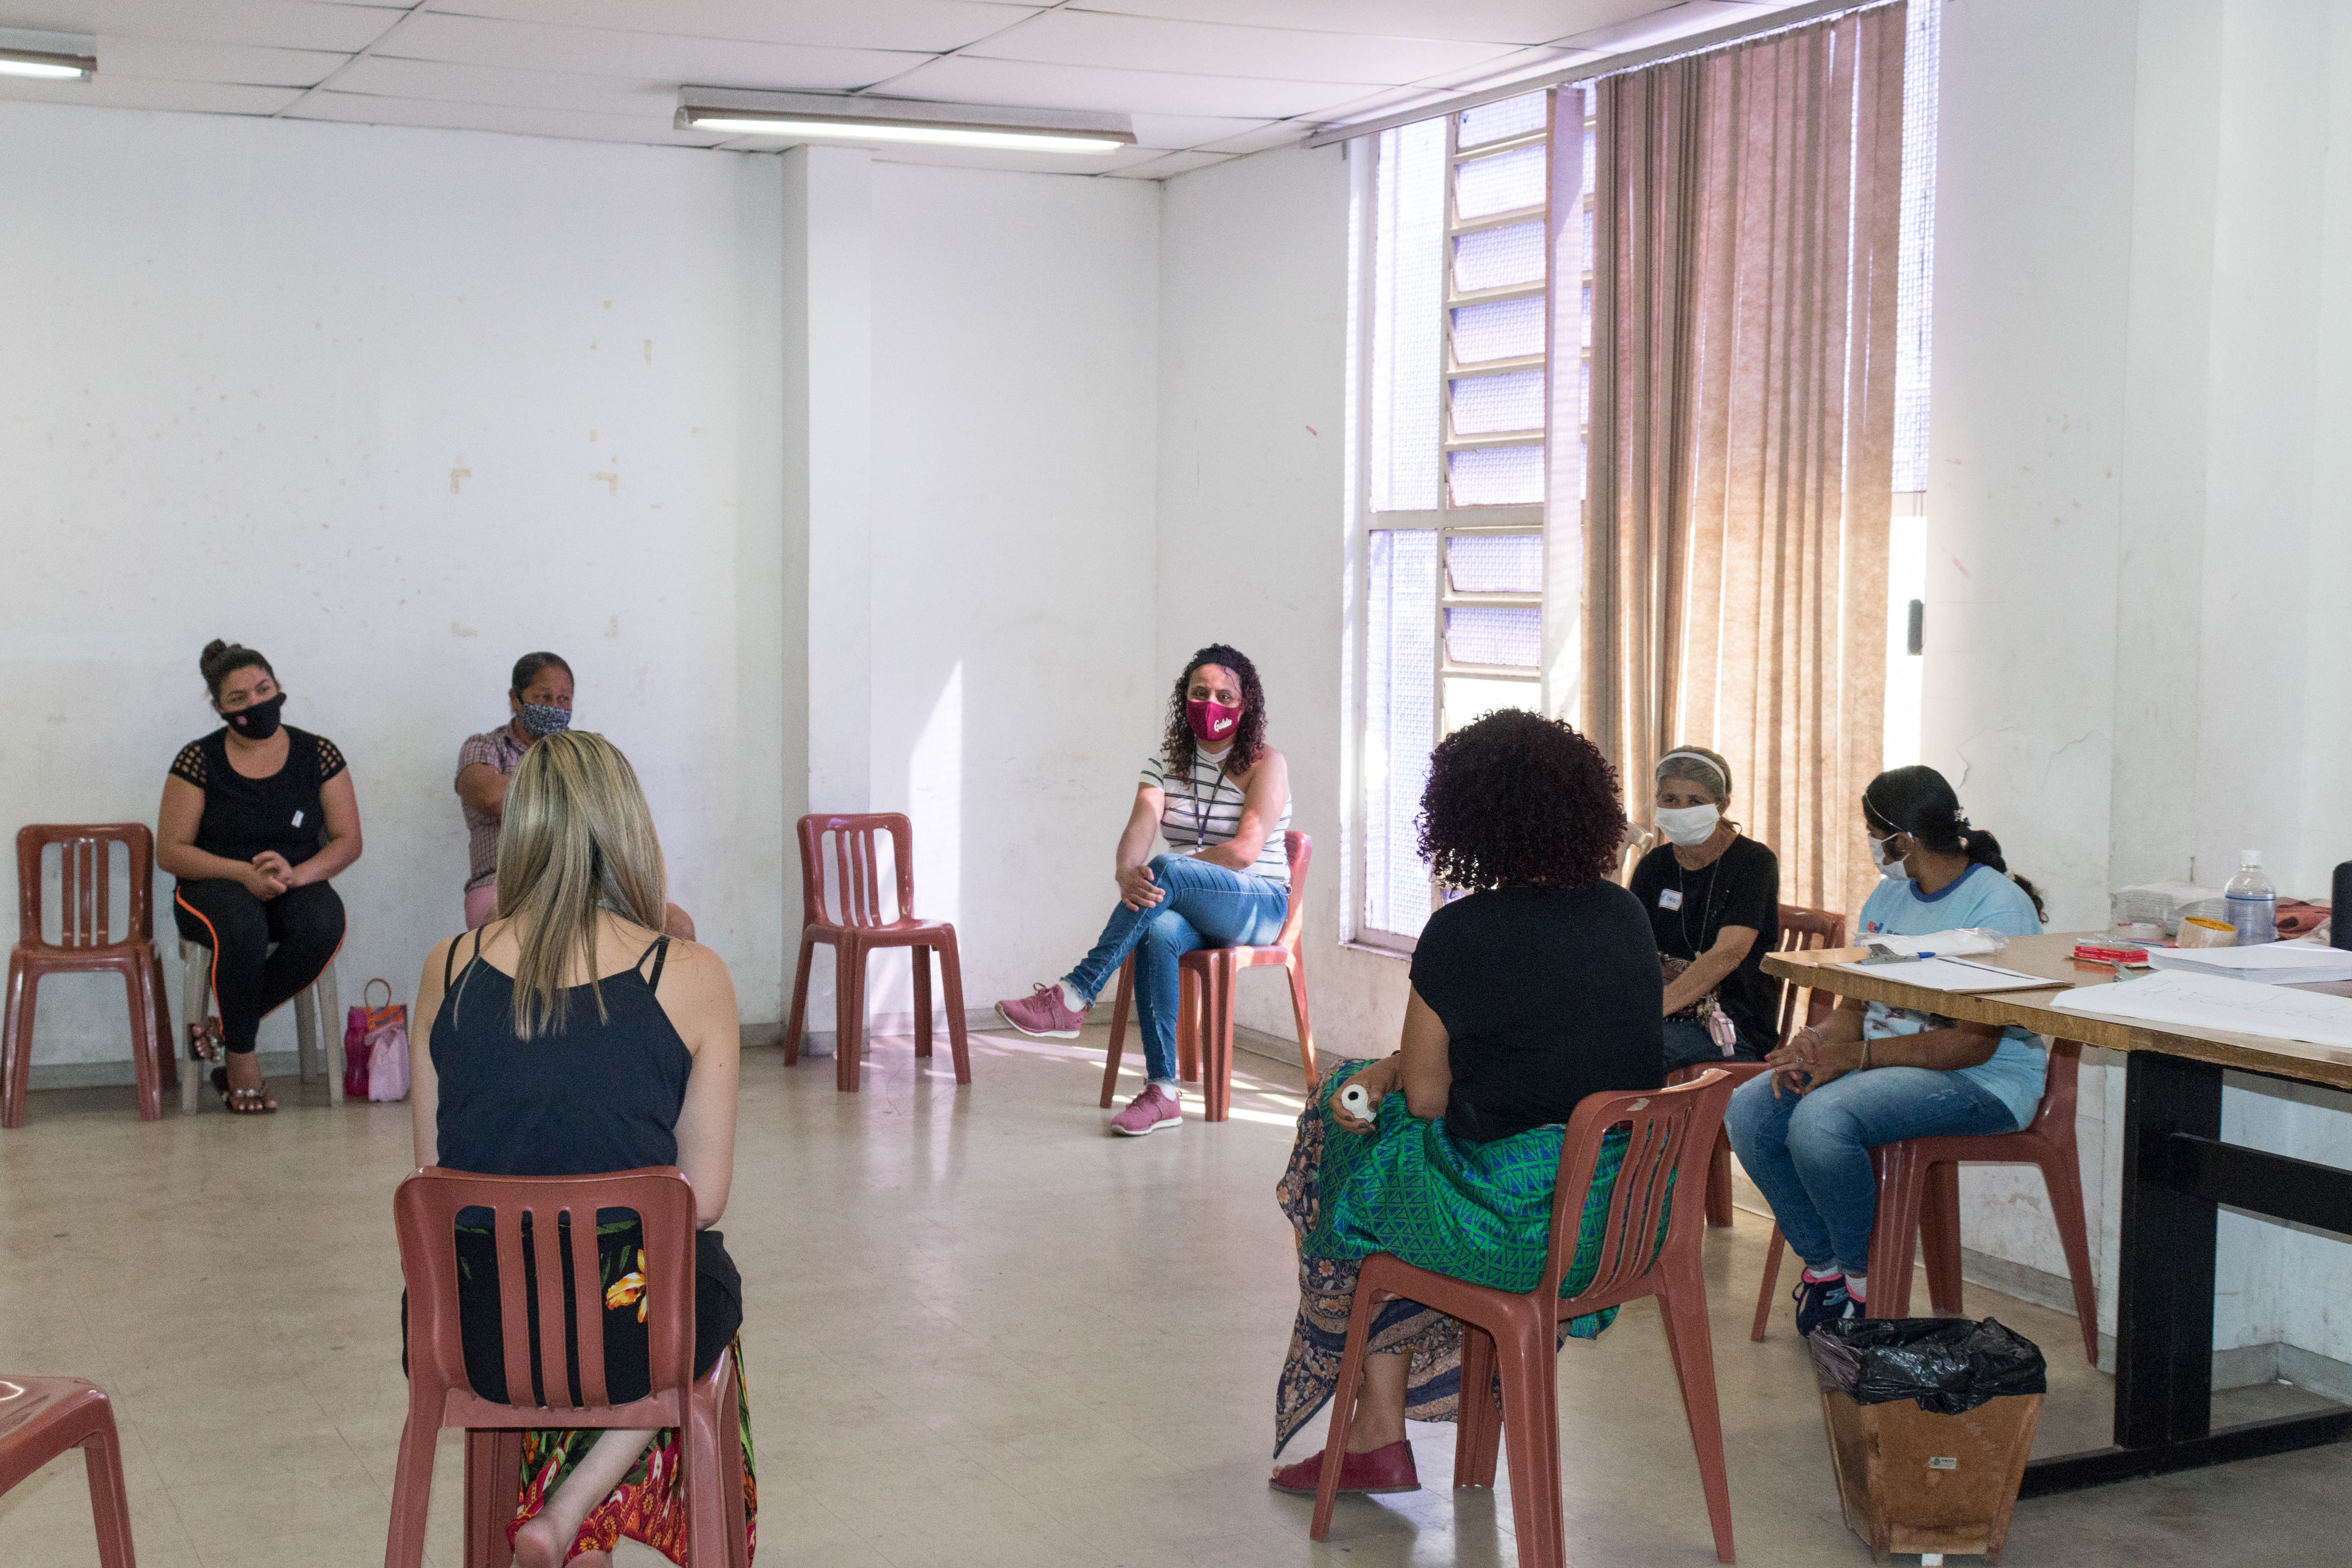 Foto da sala em que aconteceu o encontro com as mulheres adultas. As cadeiras estão dispostas em círculo e sete mulheres estão sentadas na roda